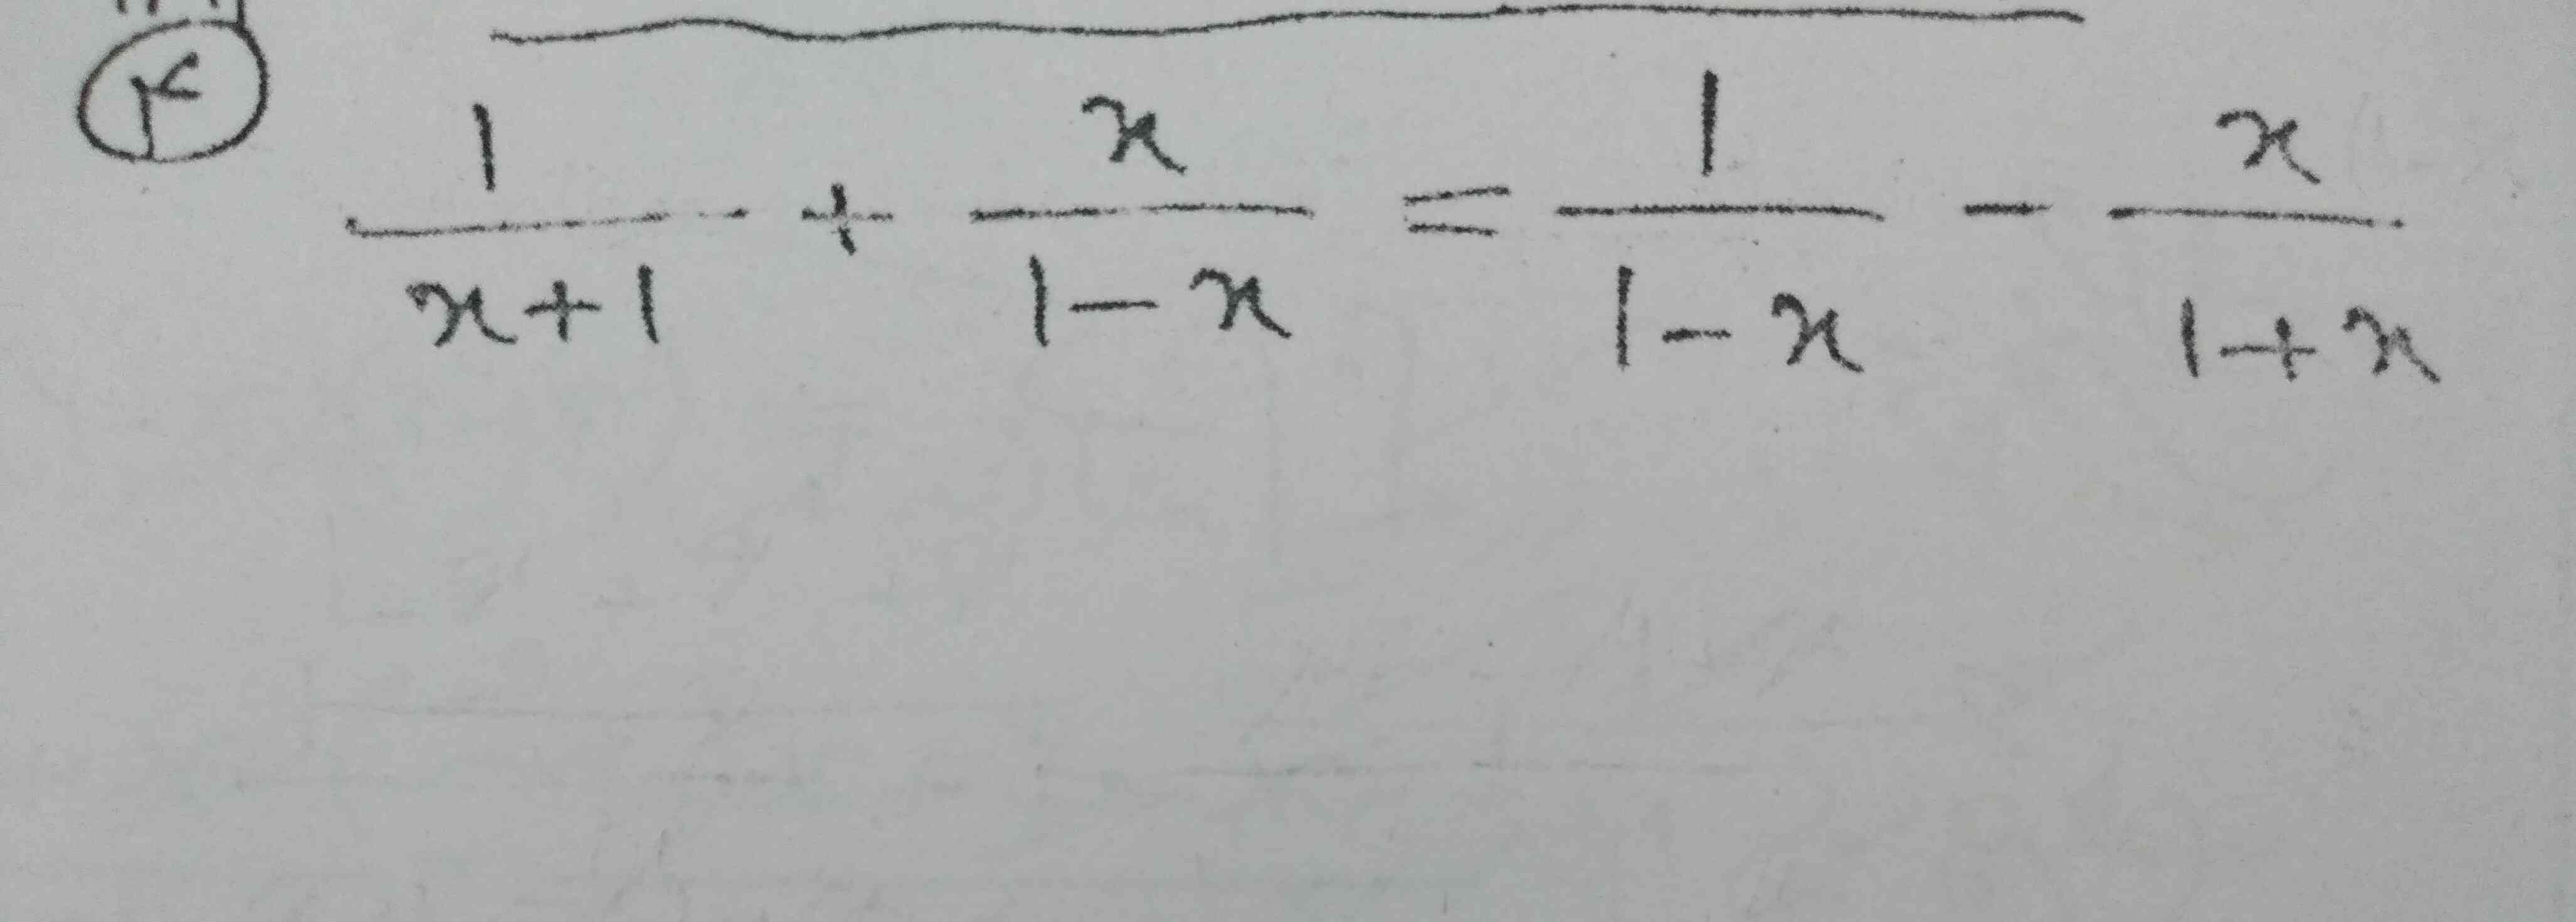 معادله زیر را حل کنید.